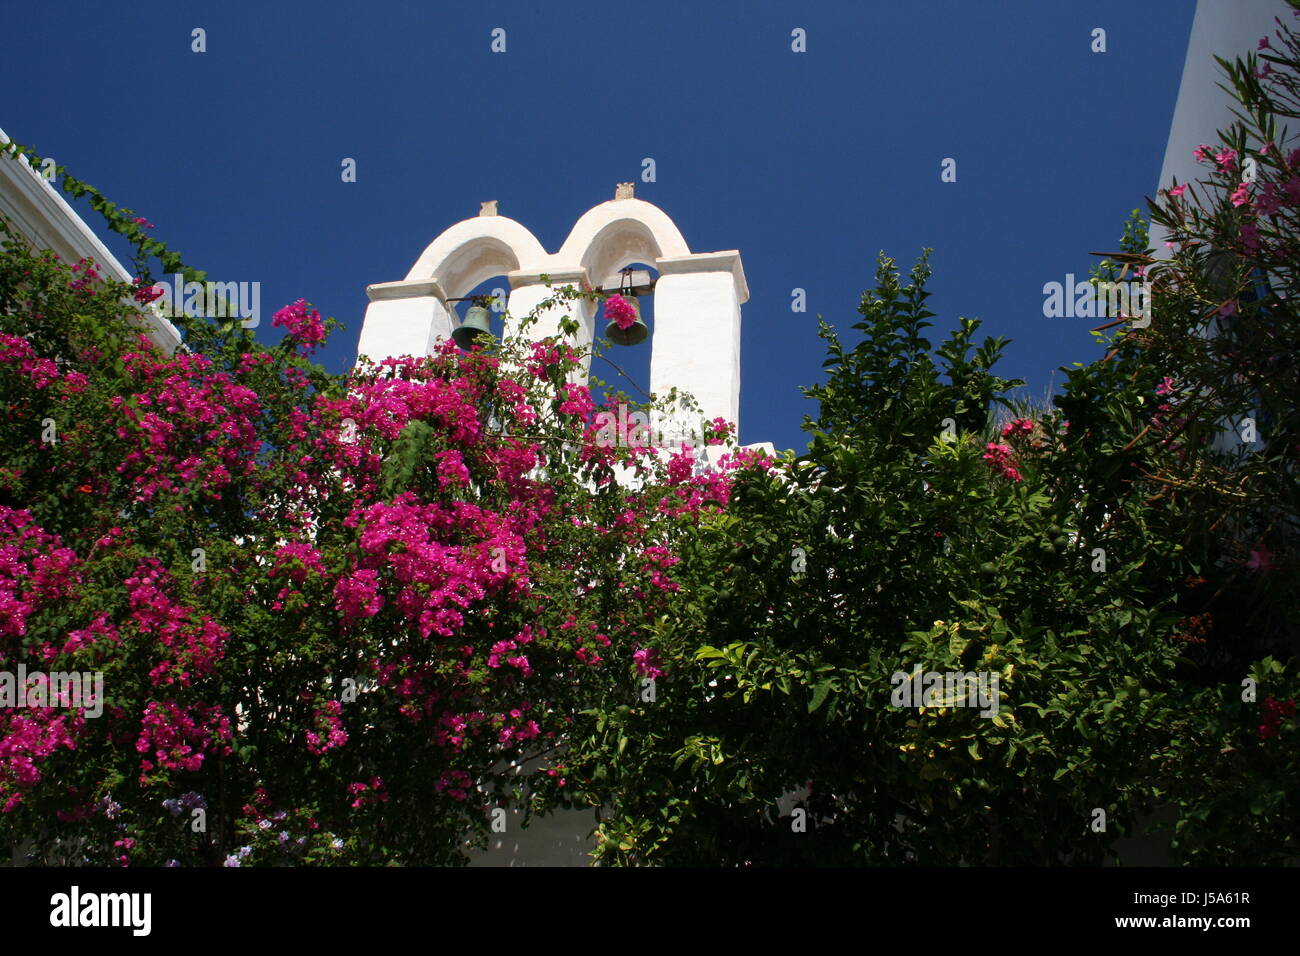 Chiesa Grecia boccole arbusto belfry zwei glocken parikia griechischer stil Foto Stock